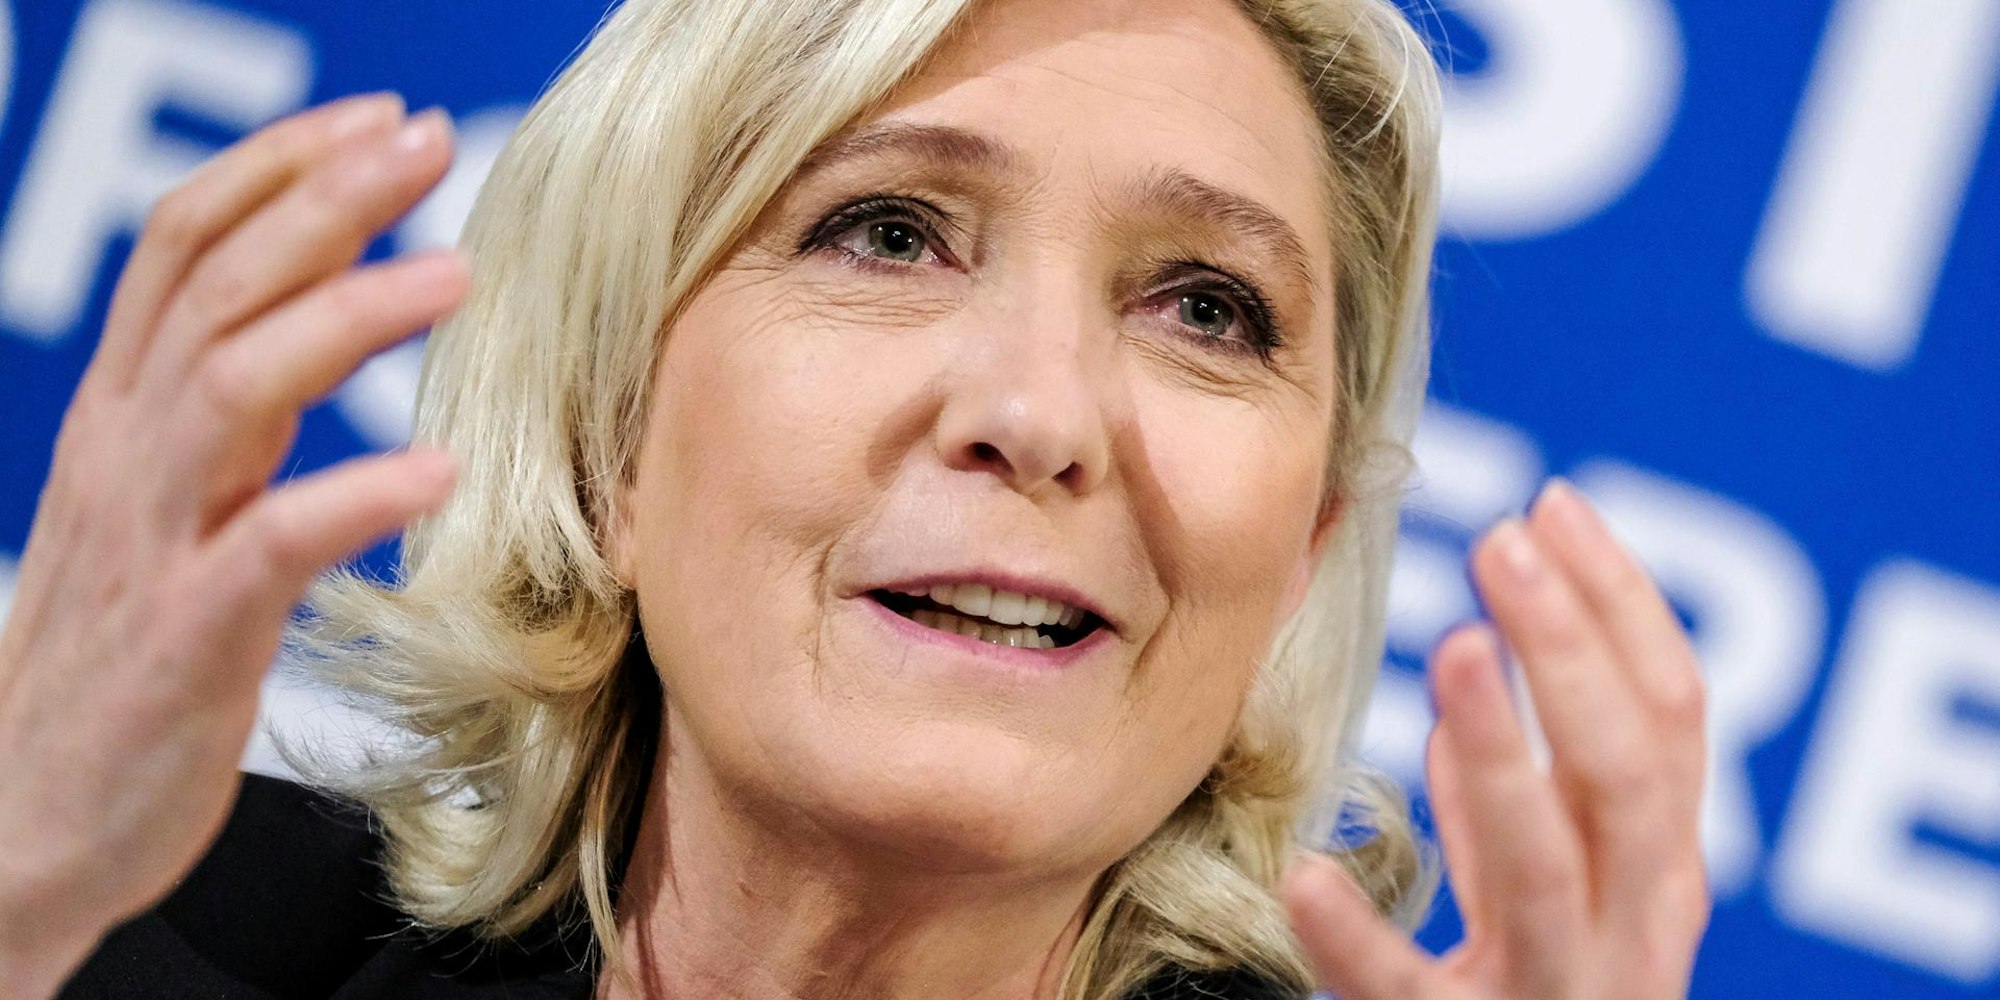 Le Pen